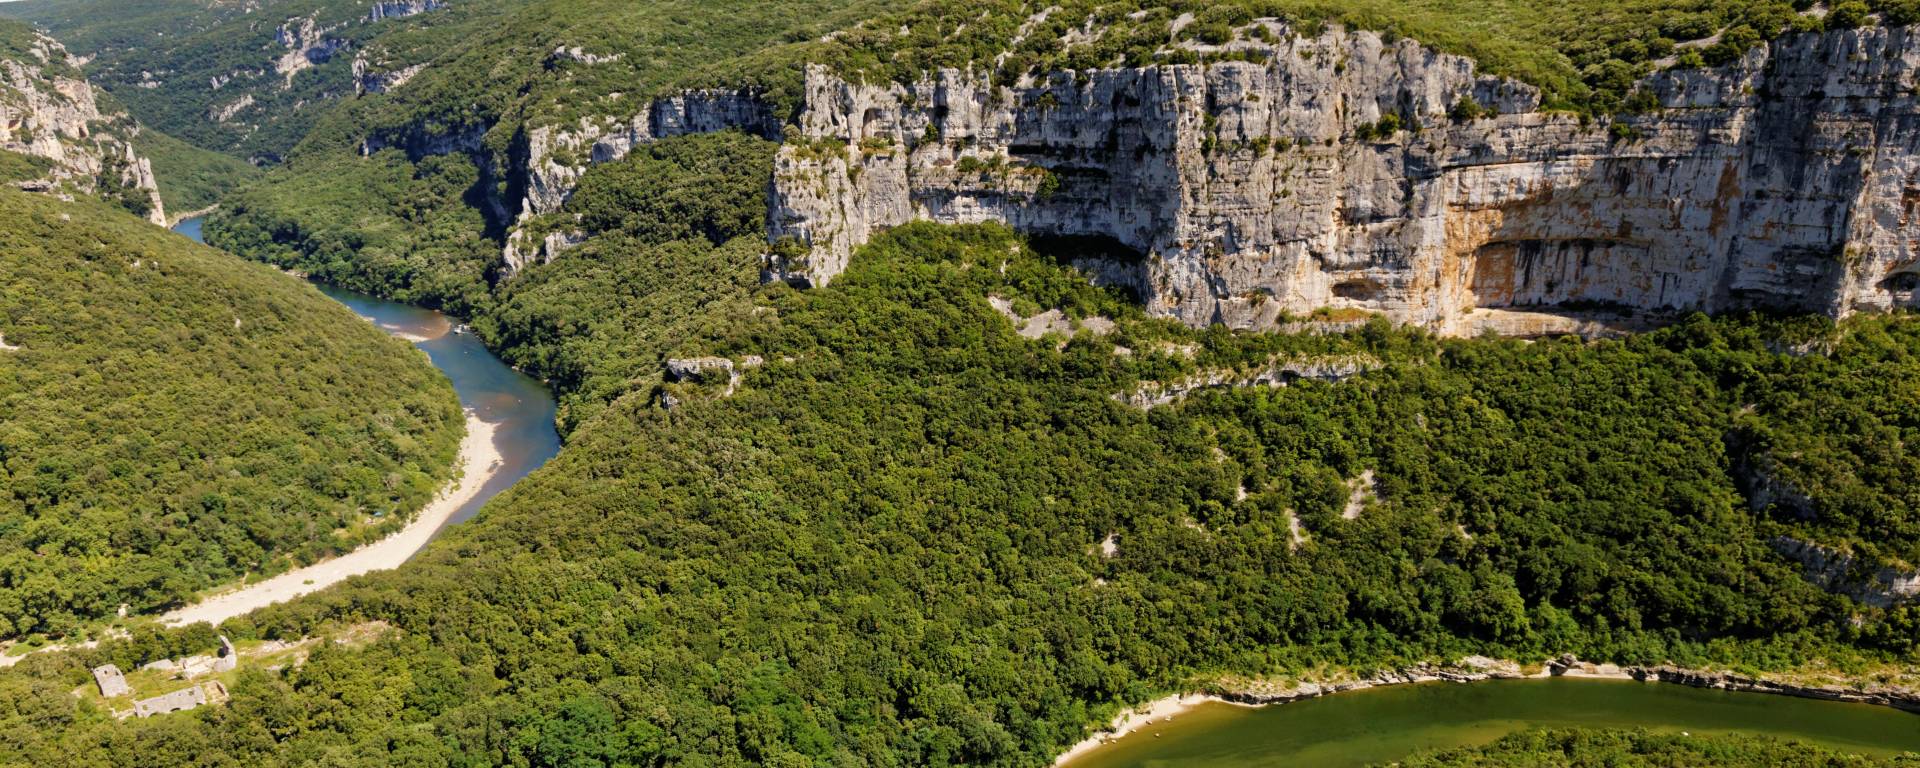 Les gorges de l’Ardèche : cartes et guide pratique